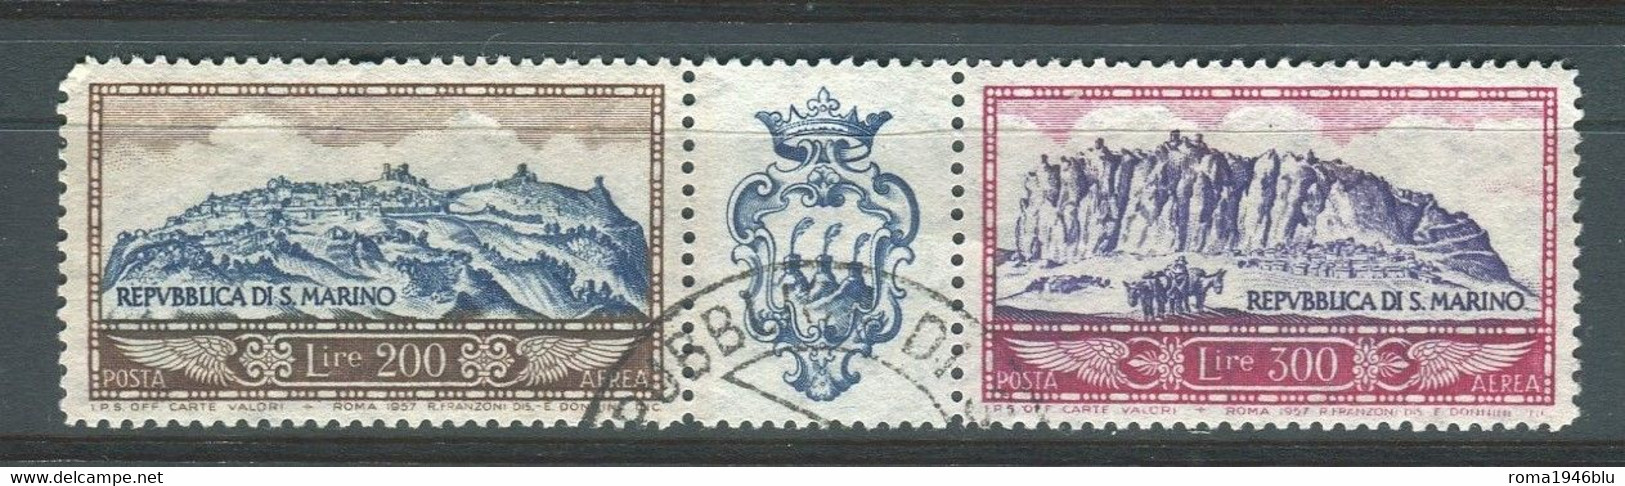 SAN MARINO 1958 POSTA AEREA VEDUTE DEL MONTE TITANO USATO - Used Stamps